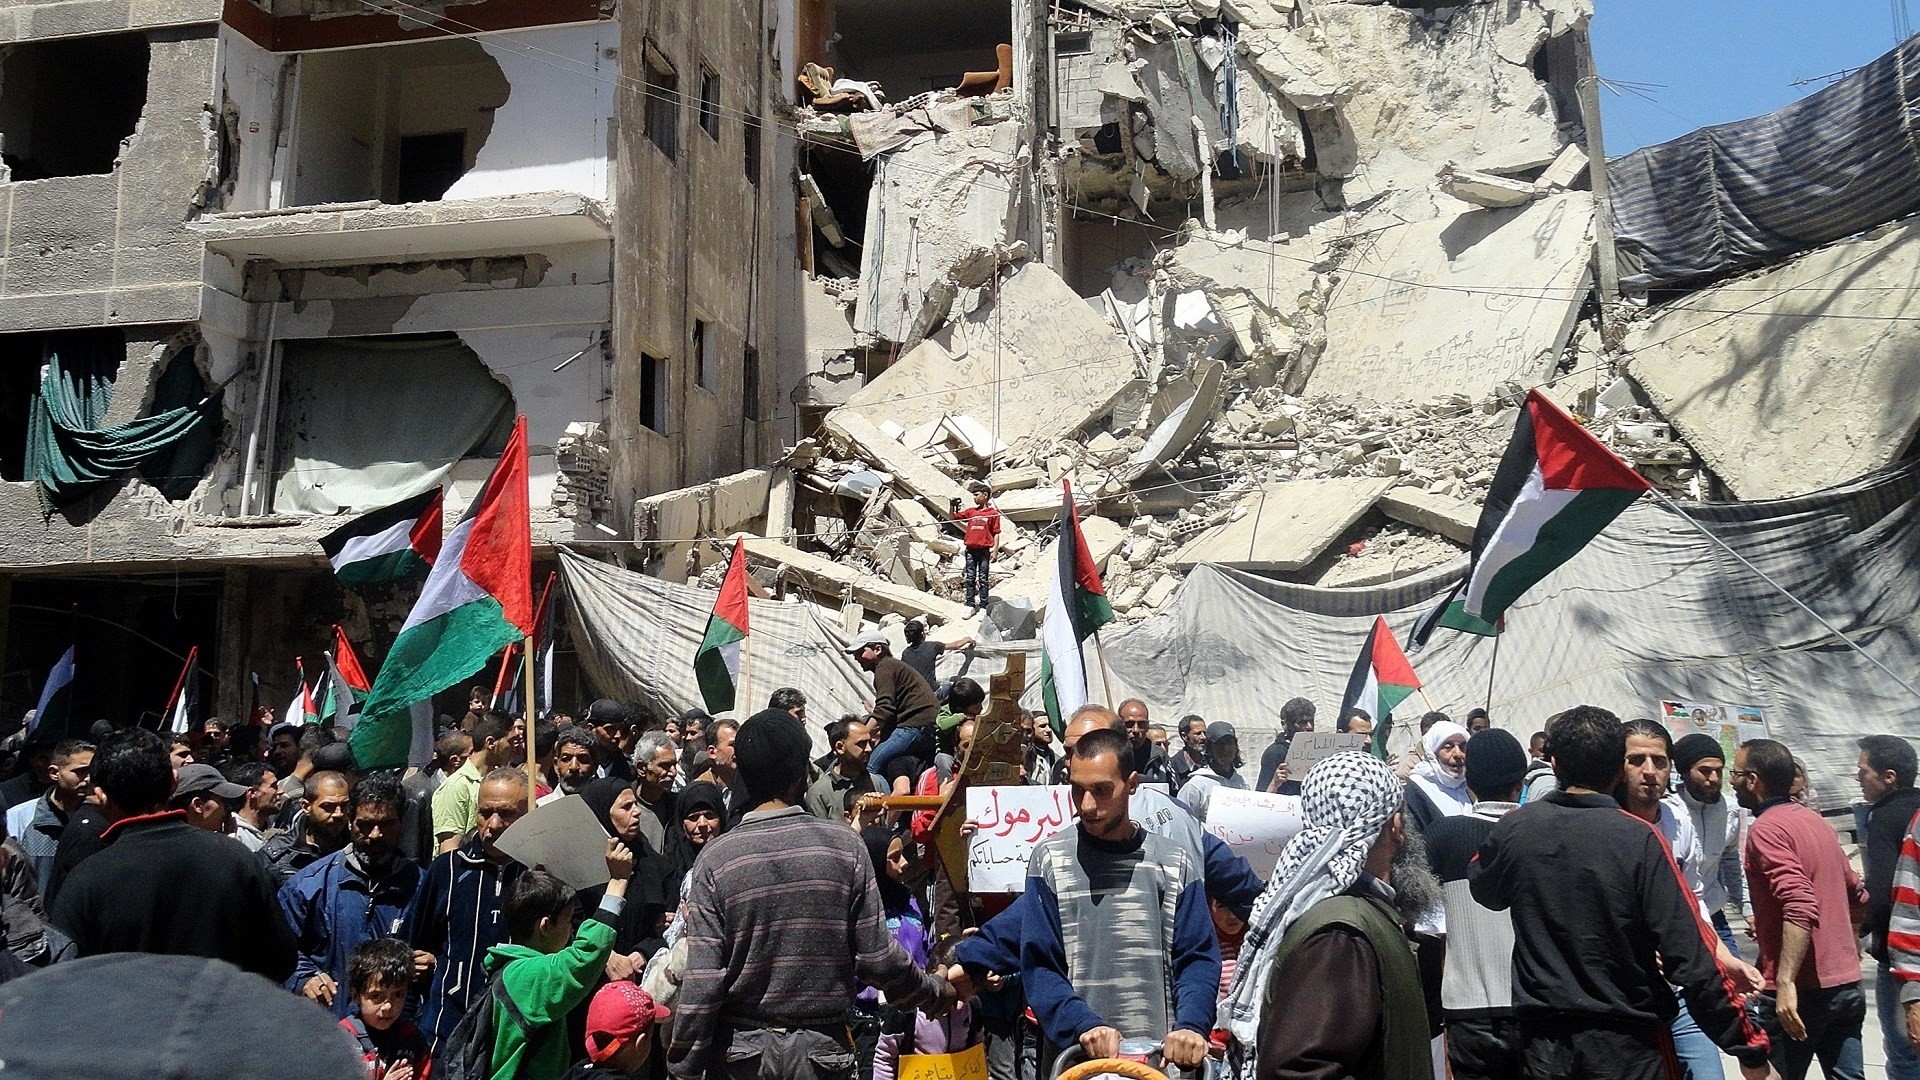 ארגון זכויות אדם חושף הגירה של 200,000 פלסטינים מסוריה